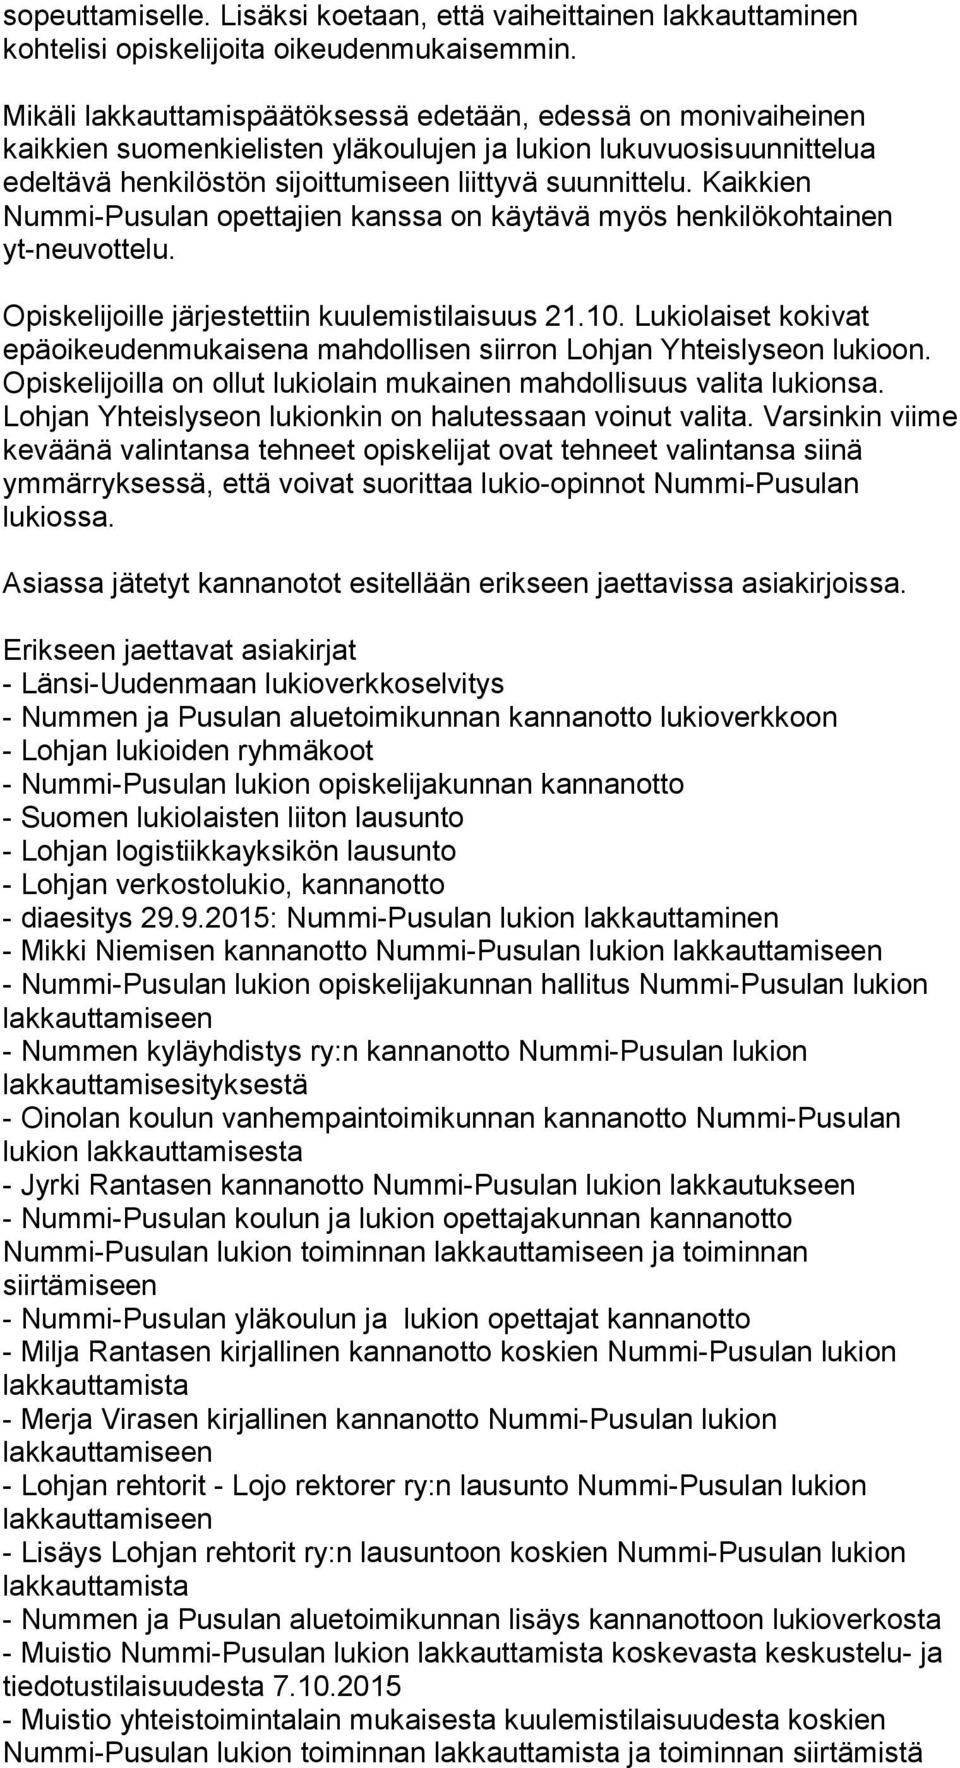 Kaikkien Nummi-Pusulan opettajien kanssa on käytävä myös henkilökohtainen yt-neuvottelu. Opiskelijoille järjestettiin kuulemistilaisuus 21.10.